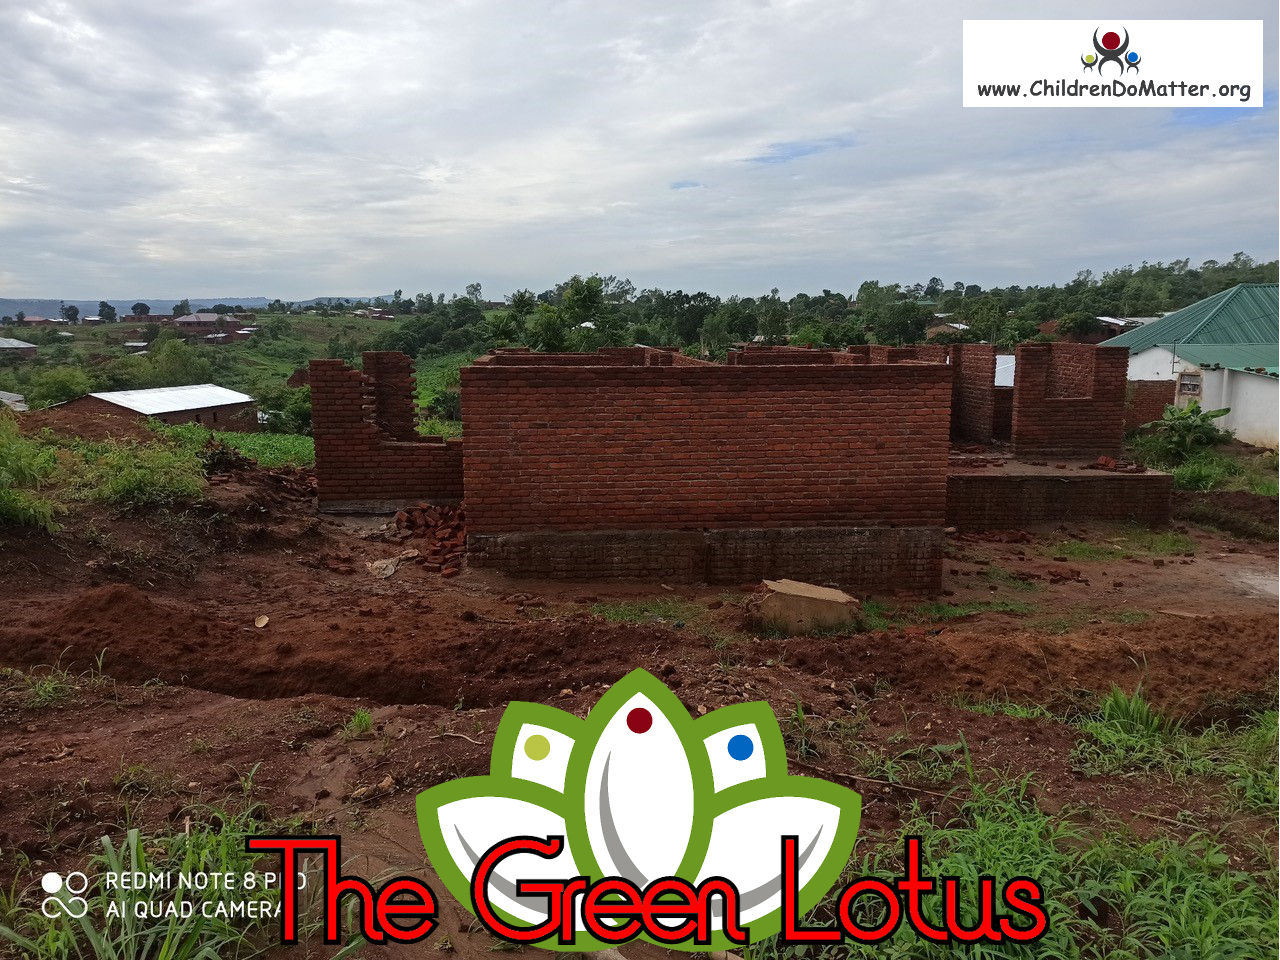 costruzione dell'orfanotrofio casa di accoglienza the green lotus a blantyre malawi - children do matter - 16